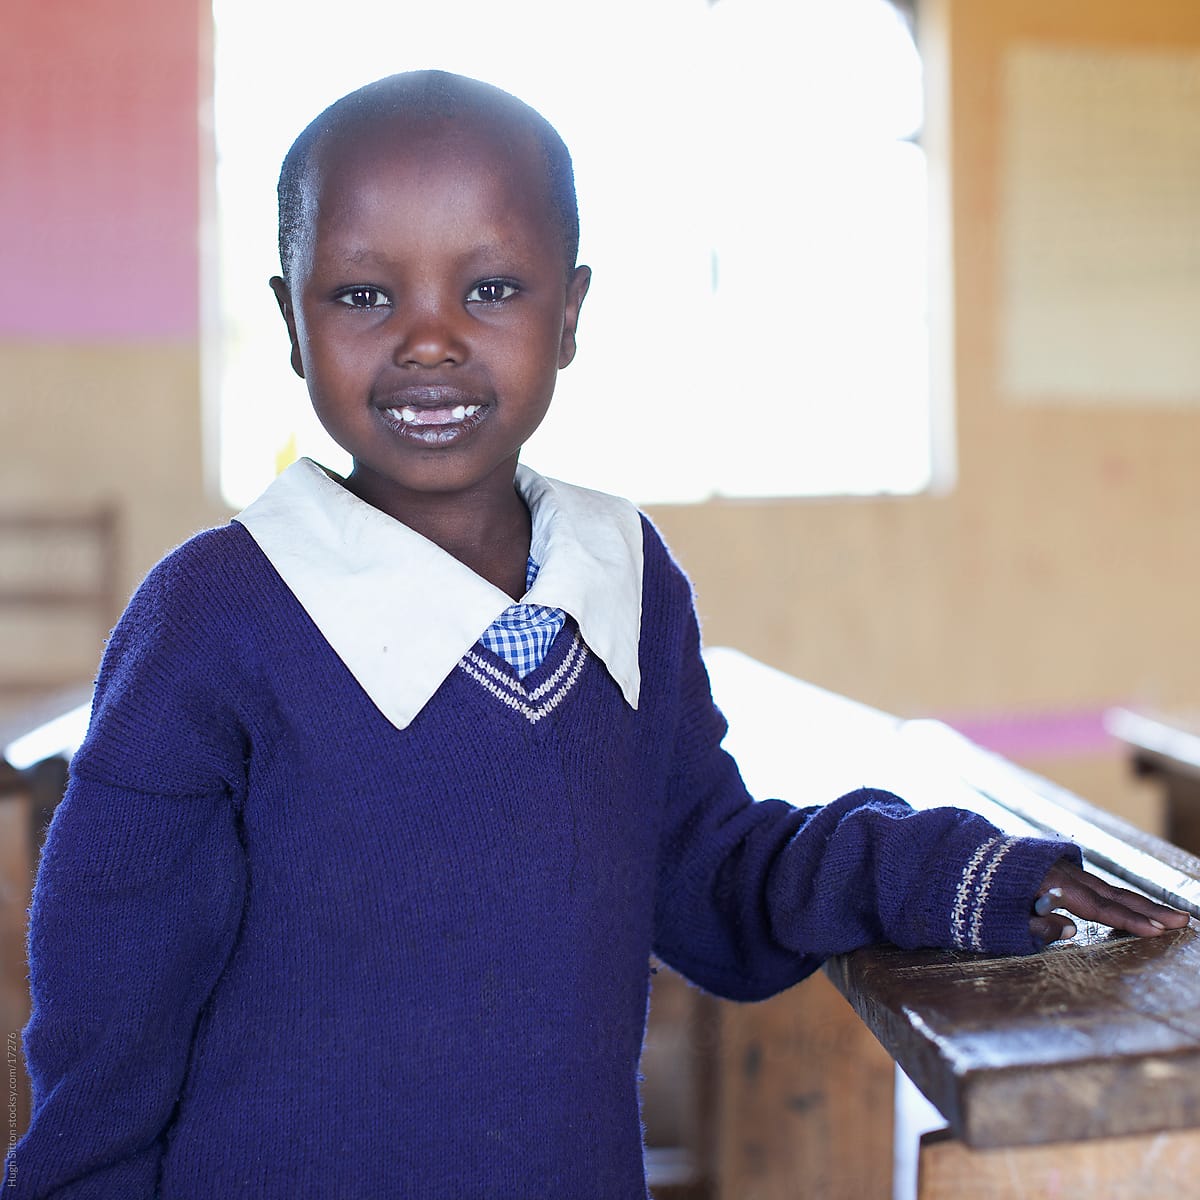 School children in busy classroom. Kenya Africa.